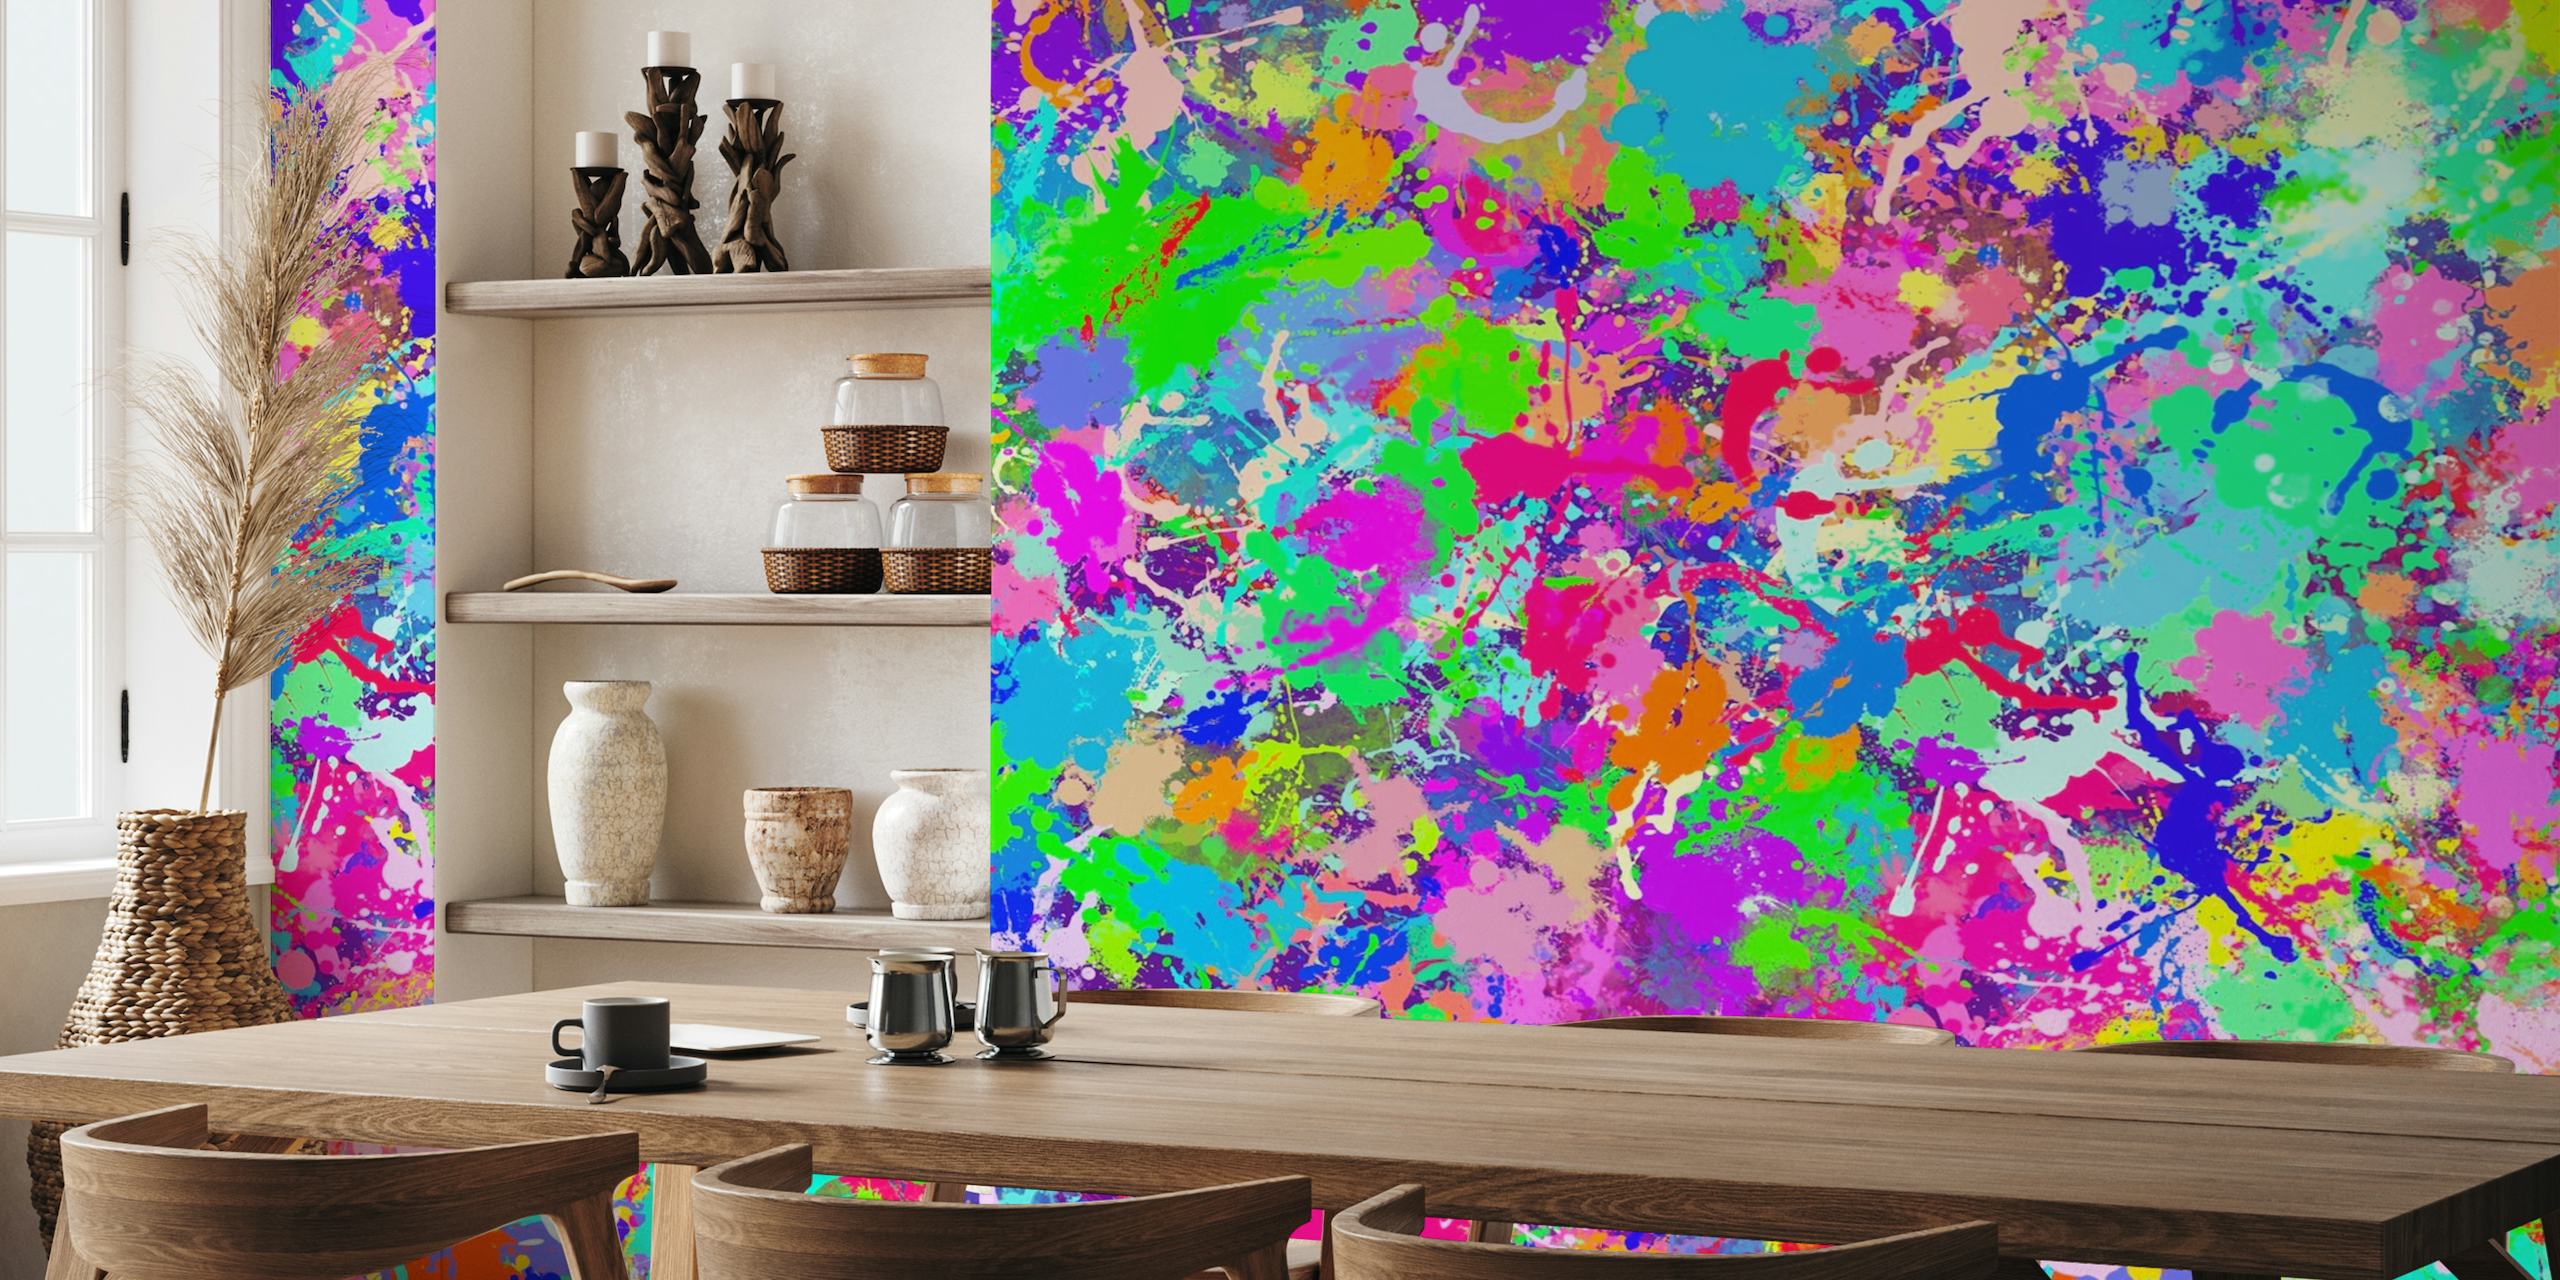 Peinture murale abstraite colorée avec des teintes vibrantes de rose, bleu, vert et jaune